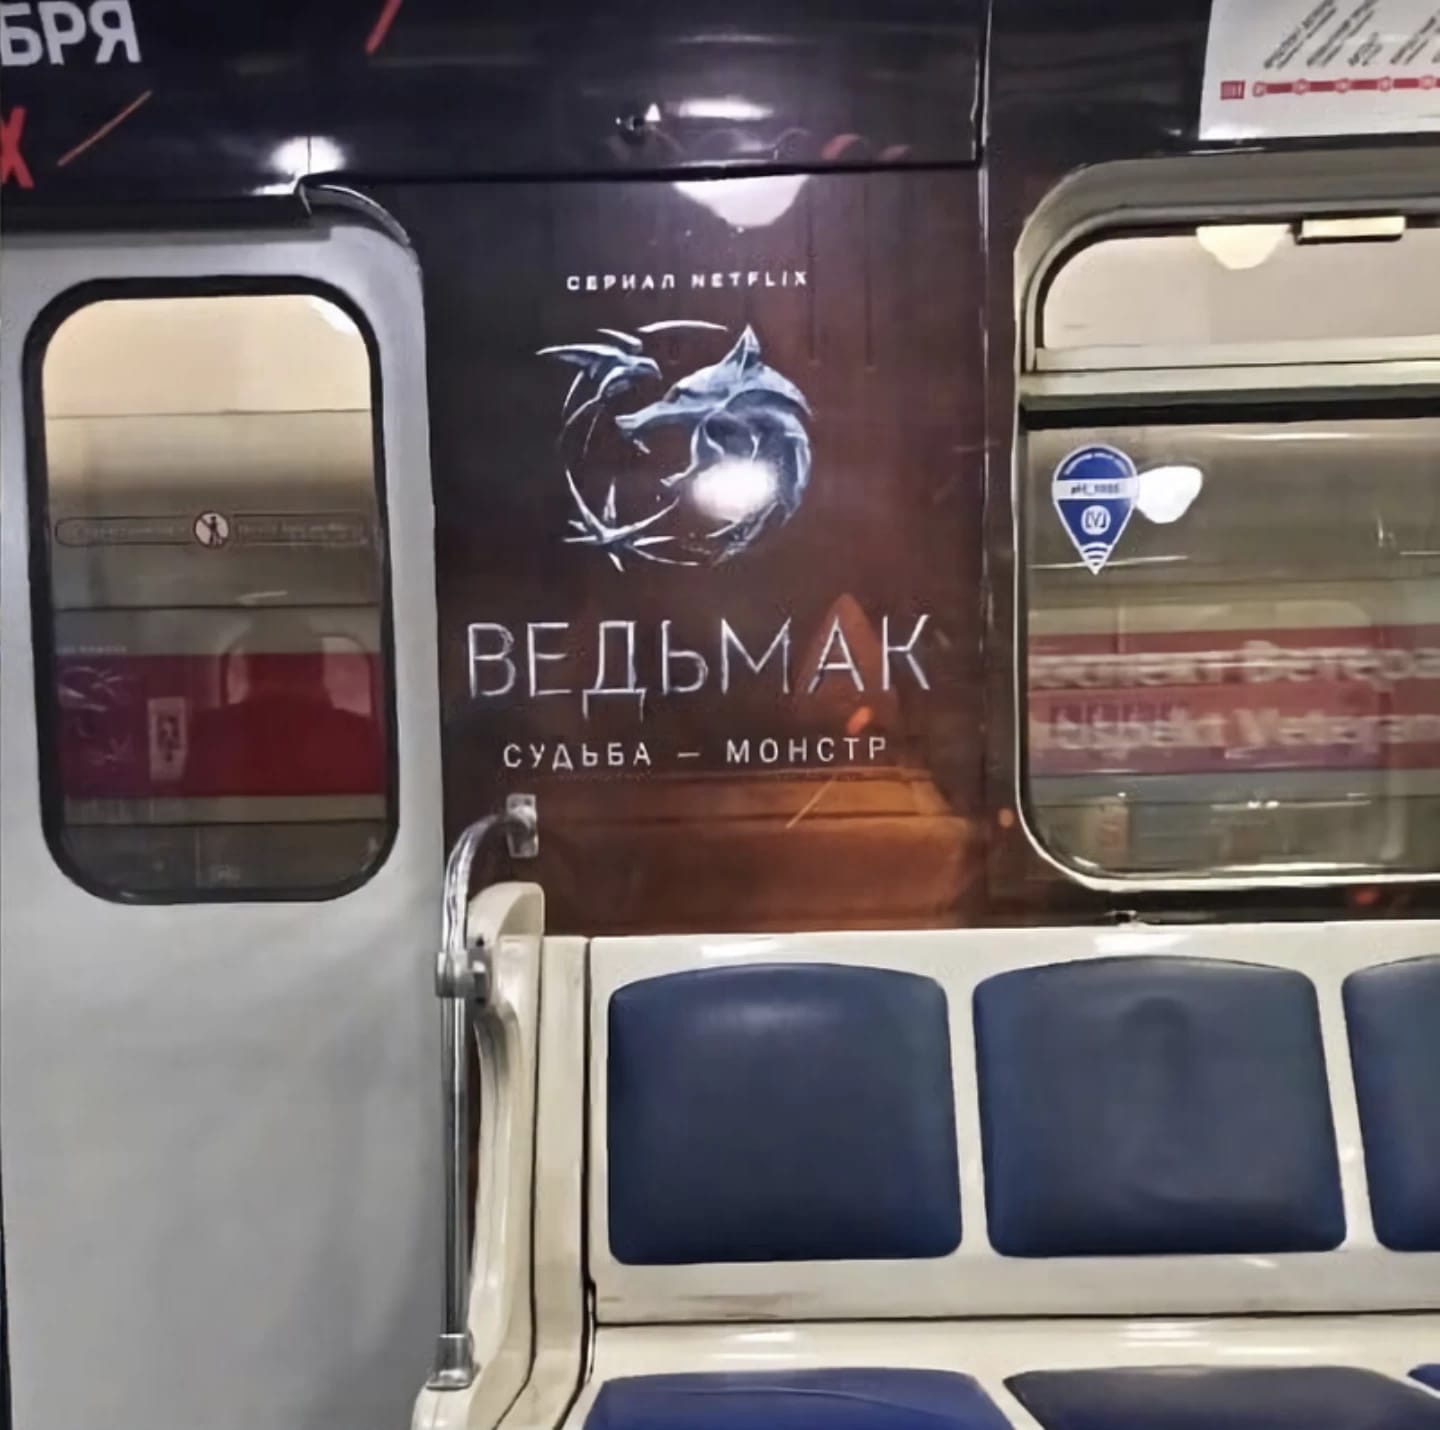 Netflix подготовила необычный маркетинговый ход к премьере второго сезона «Ведьмака». В Сибири расположили гигантский логотип сериала на заснеженном склоне горнолыжного курорта.